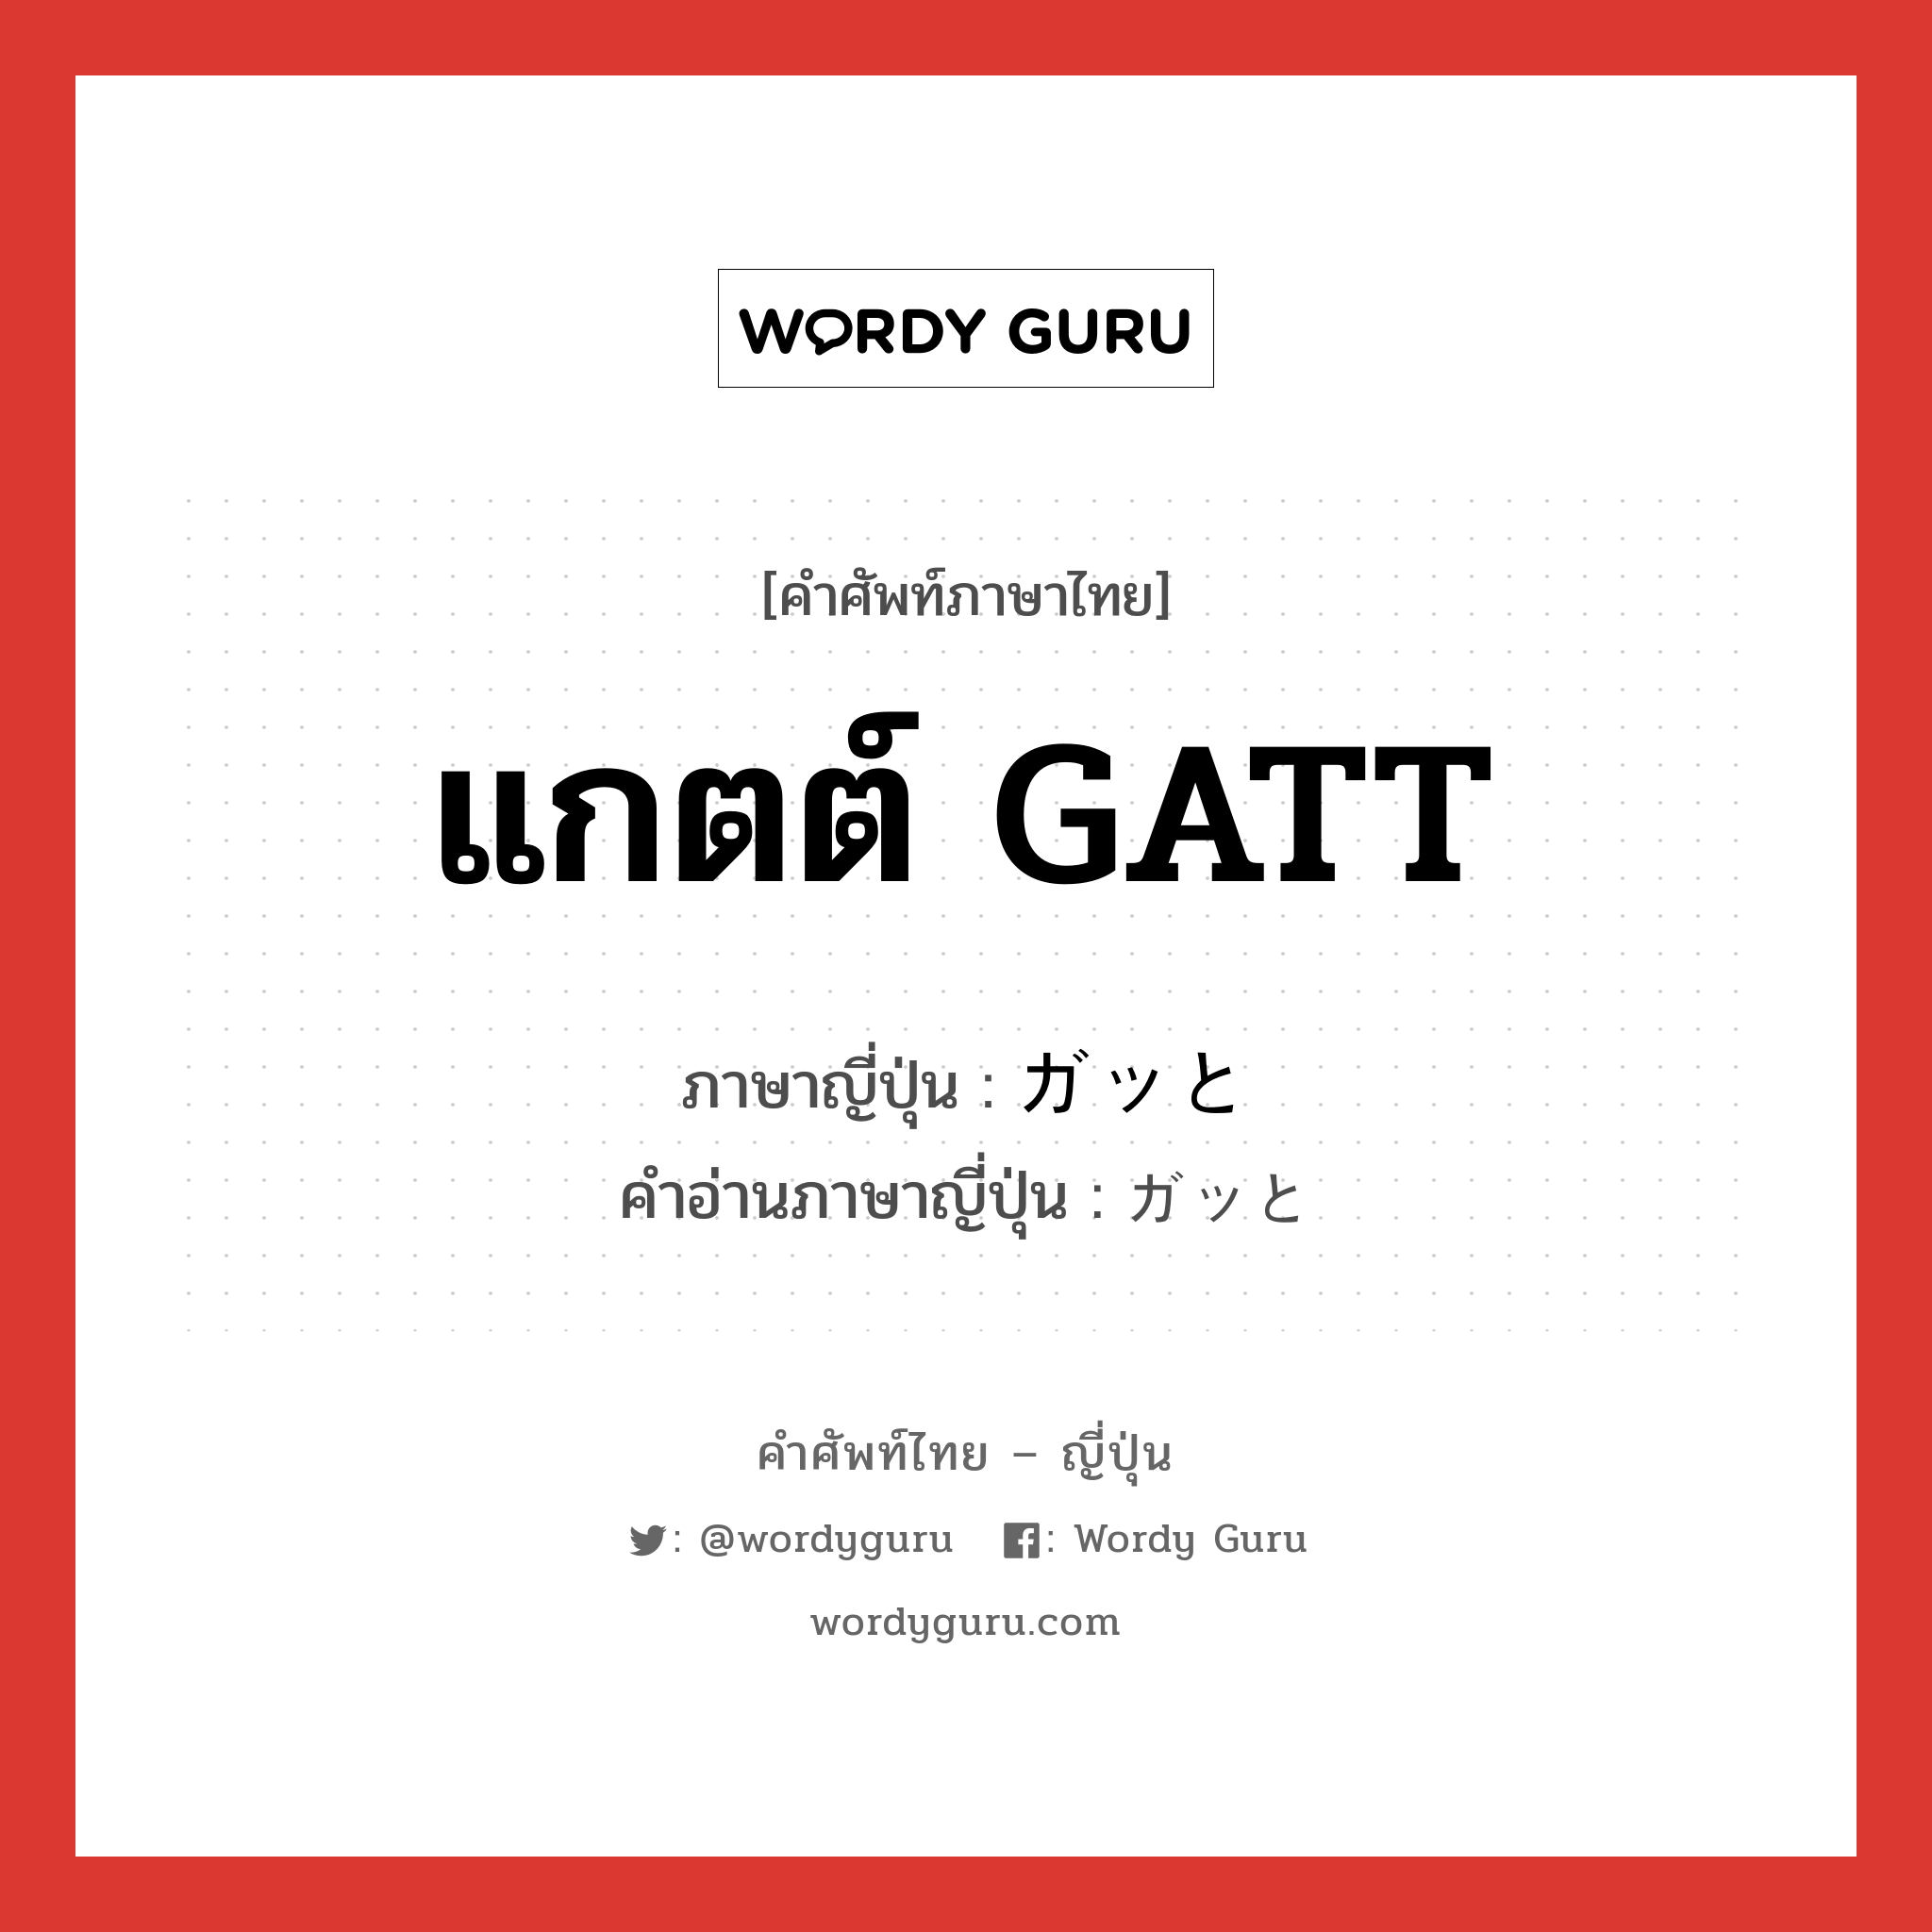 แกตต์ GATT ภาษาญี่ปุ่นคืออะไร, คำศัพท์ภาษาไทย - ญี่ปุ่น แกตต์ GATT ภาษาญี่ปุ่น ガッと คำอ่านภาษาญี่ปุ่น ガッと หมวด adv หมวด adv